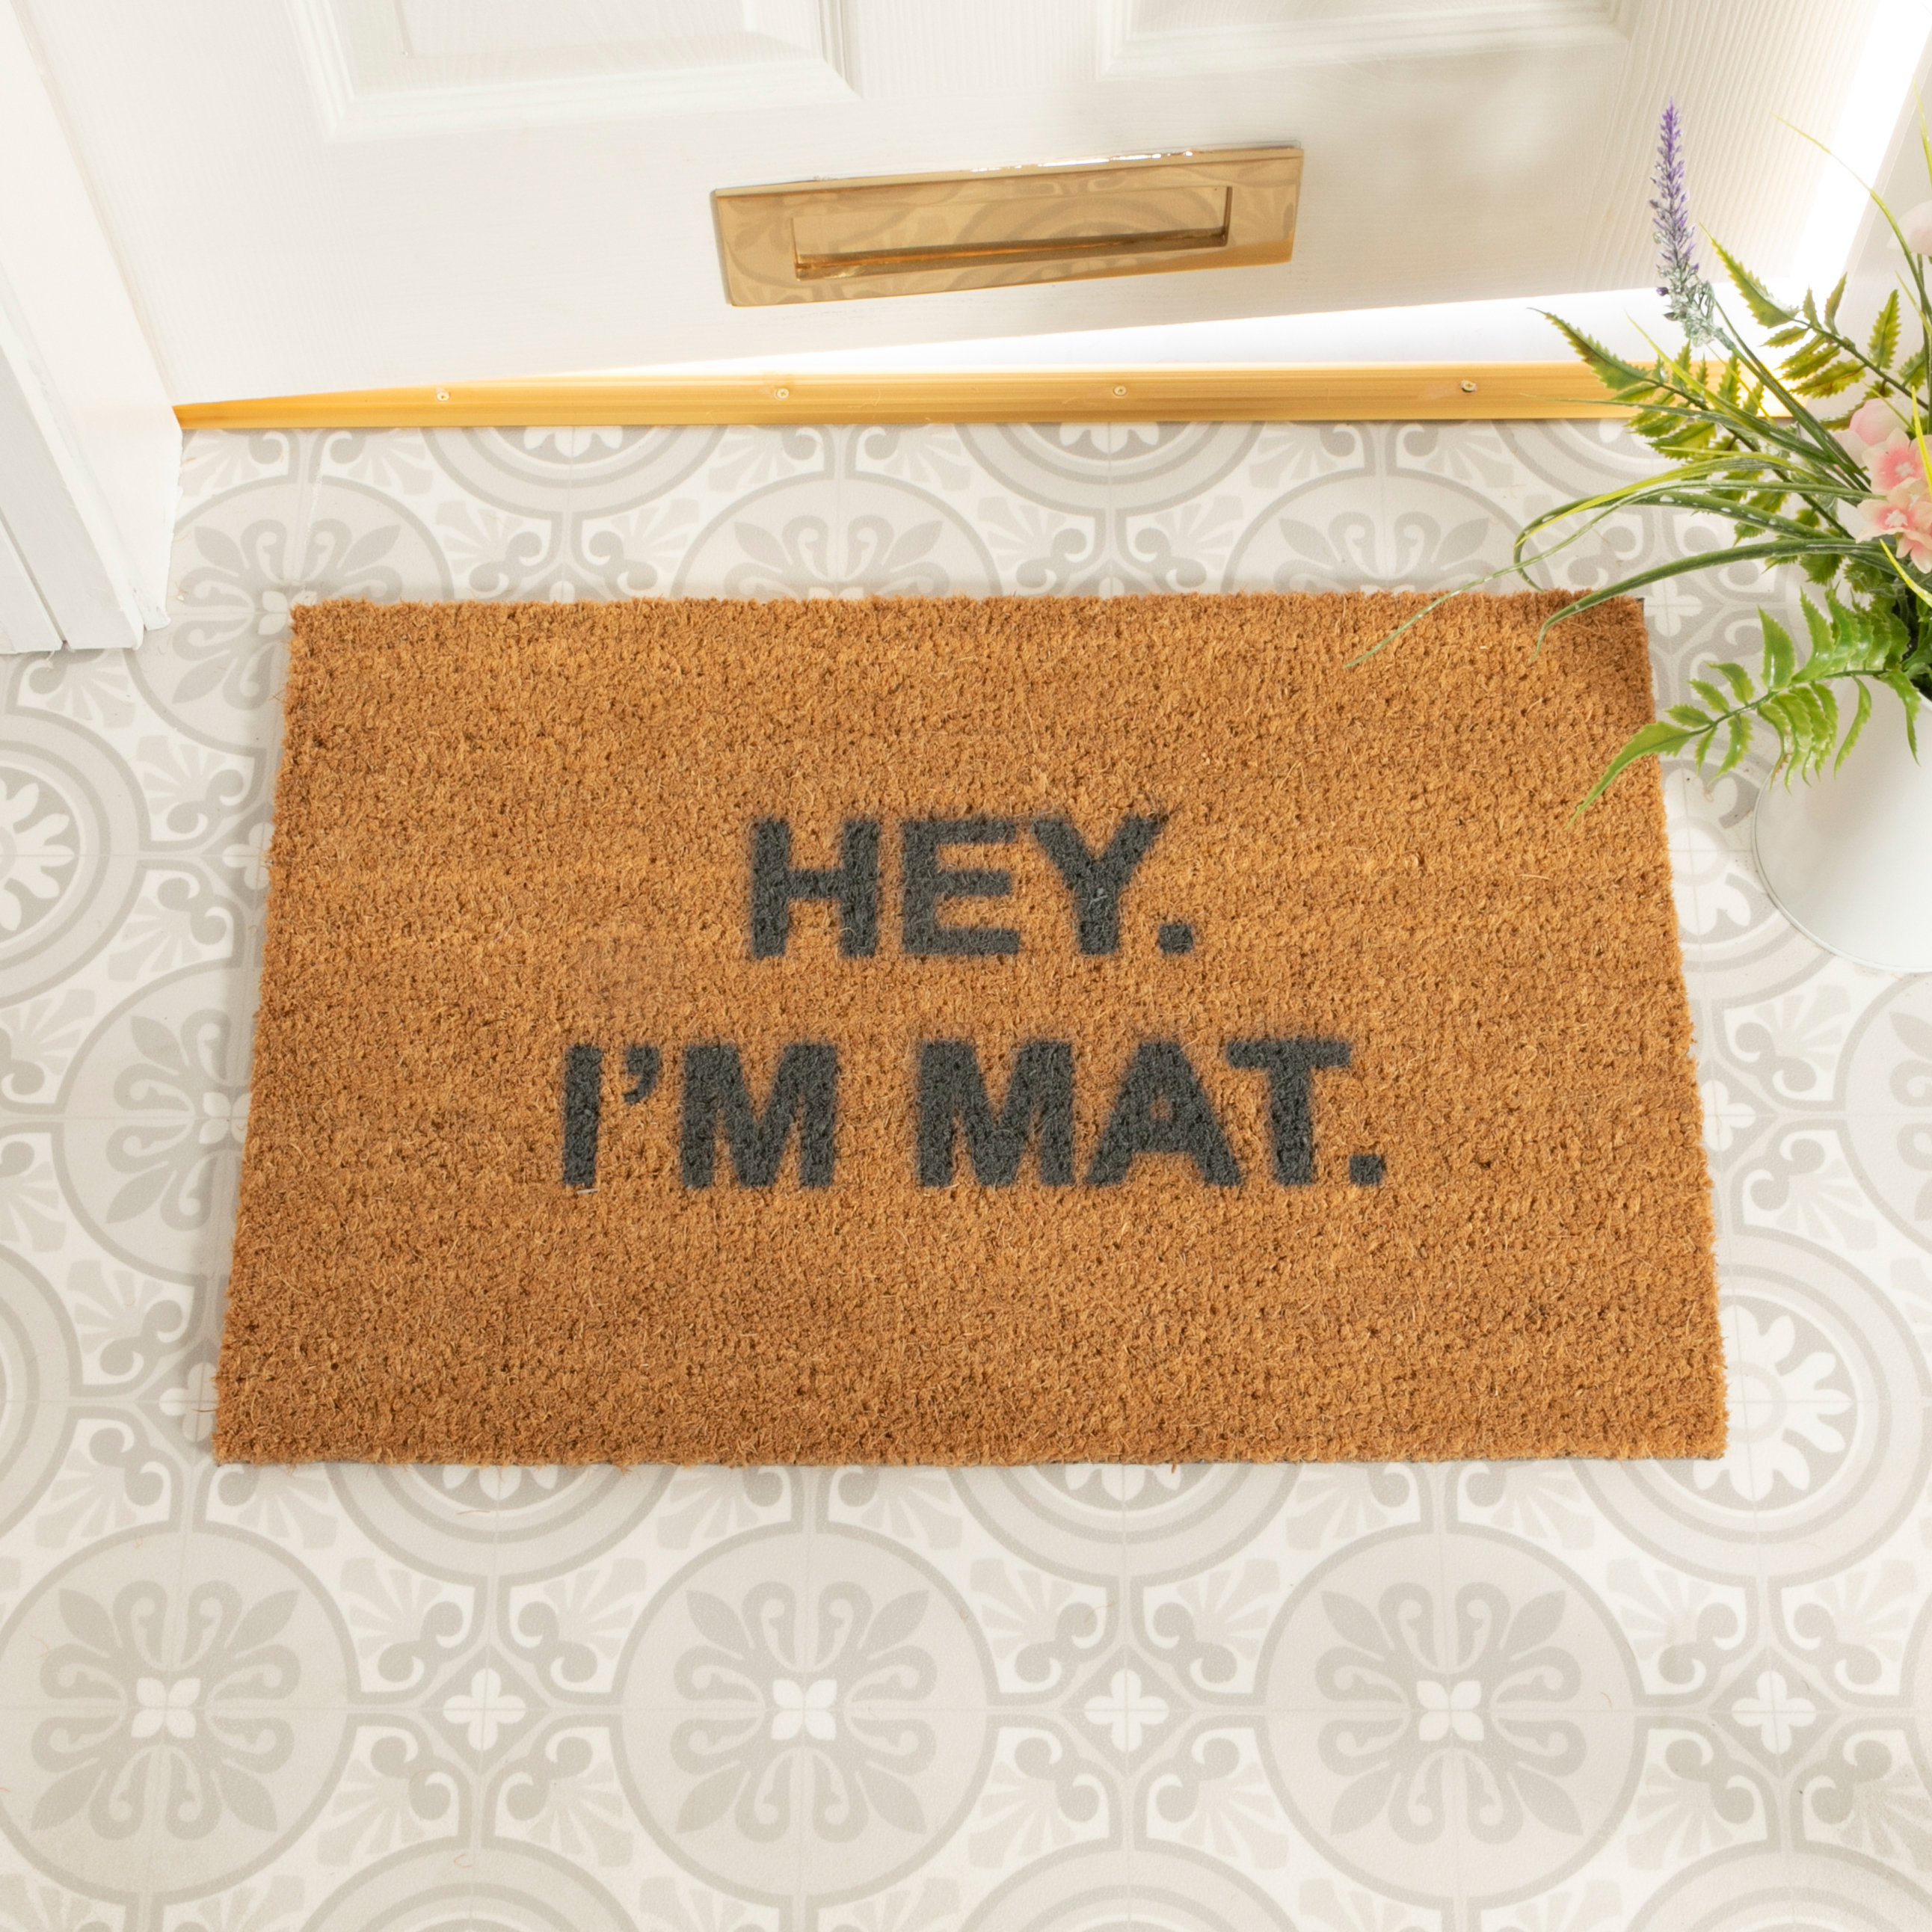 Home Indoor Outdoor Floor Doormats Non-slip Carpet Rug Door Mat 30"x18" Brown 